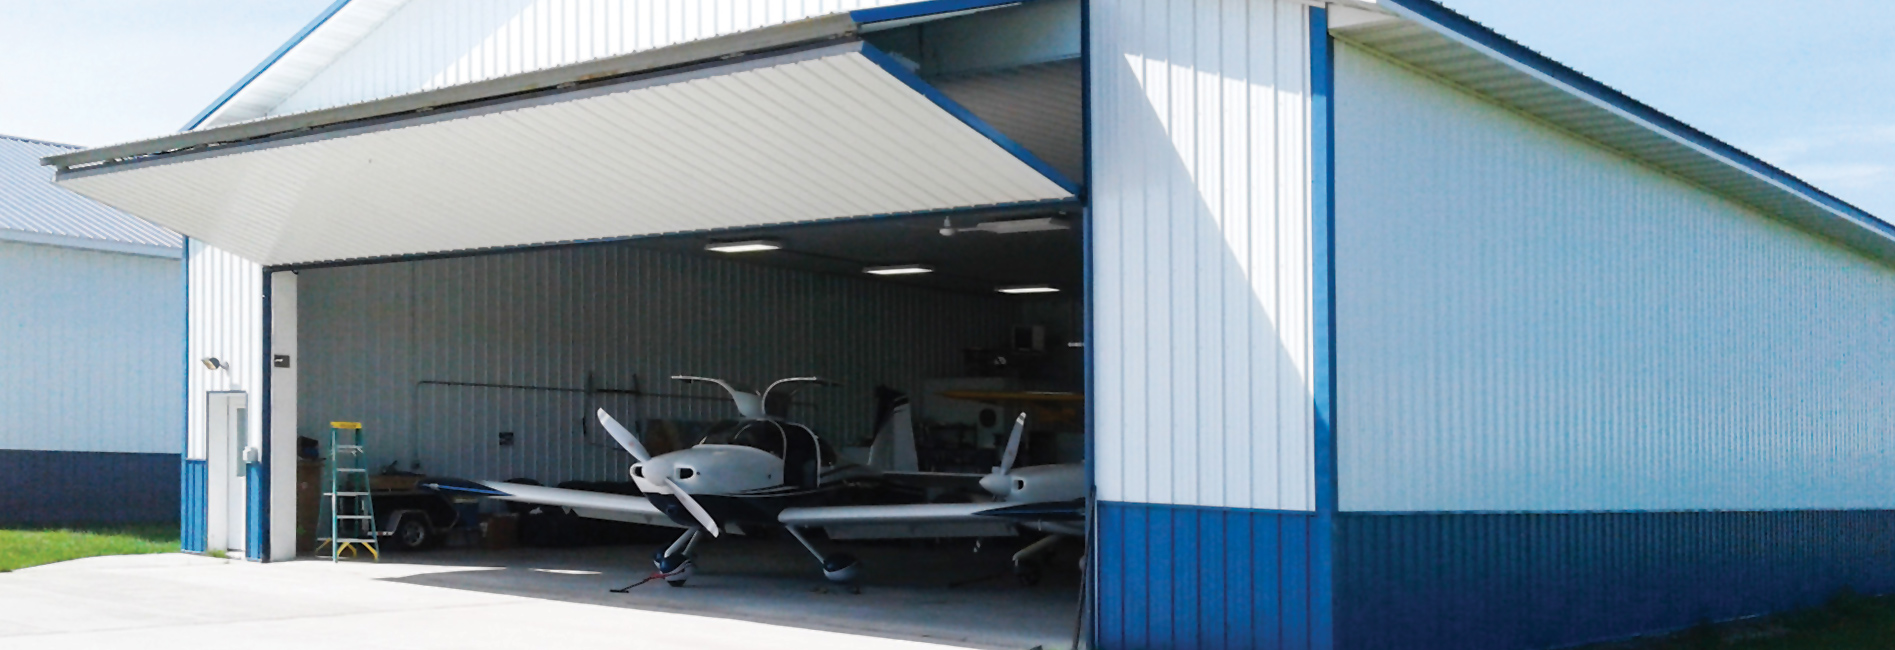 Aviation hangar bi-fold door